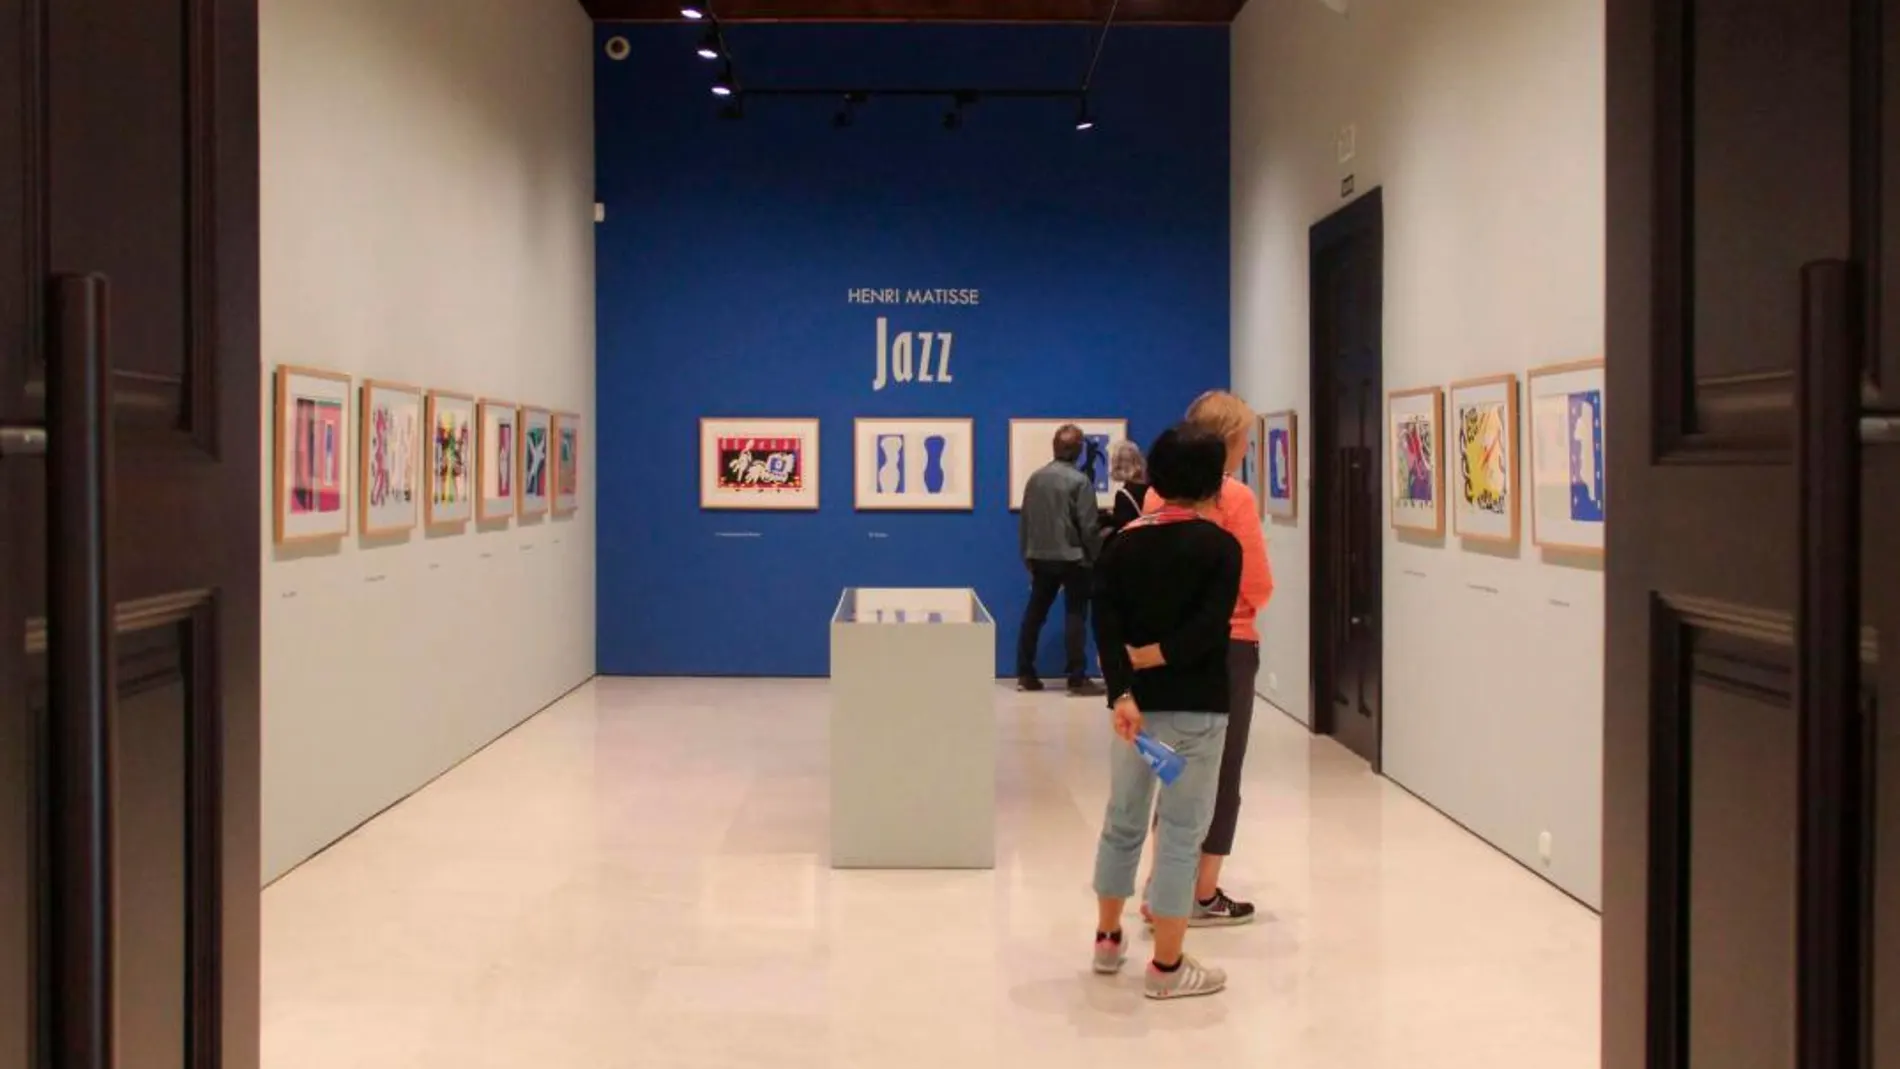 Vista de la exposición “Henri Matisse. Jazz” en el Museo Carmen Thyssen Málaga / Foto: La Razón